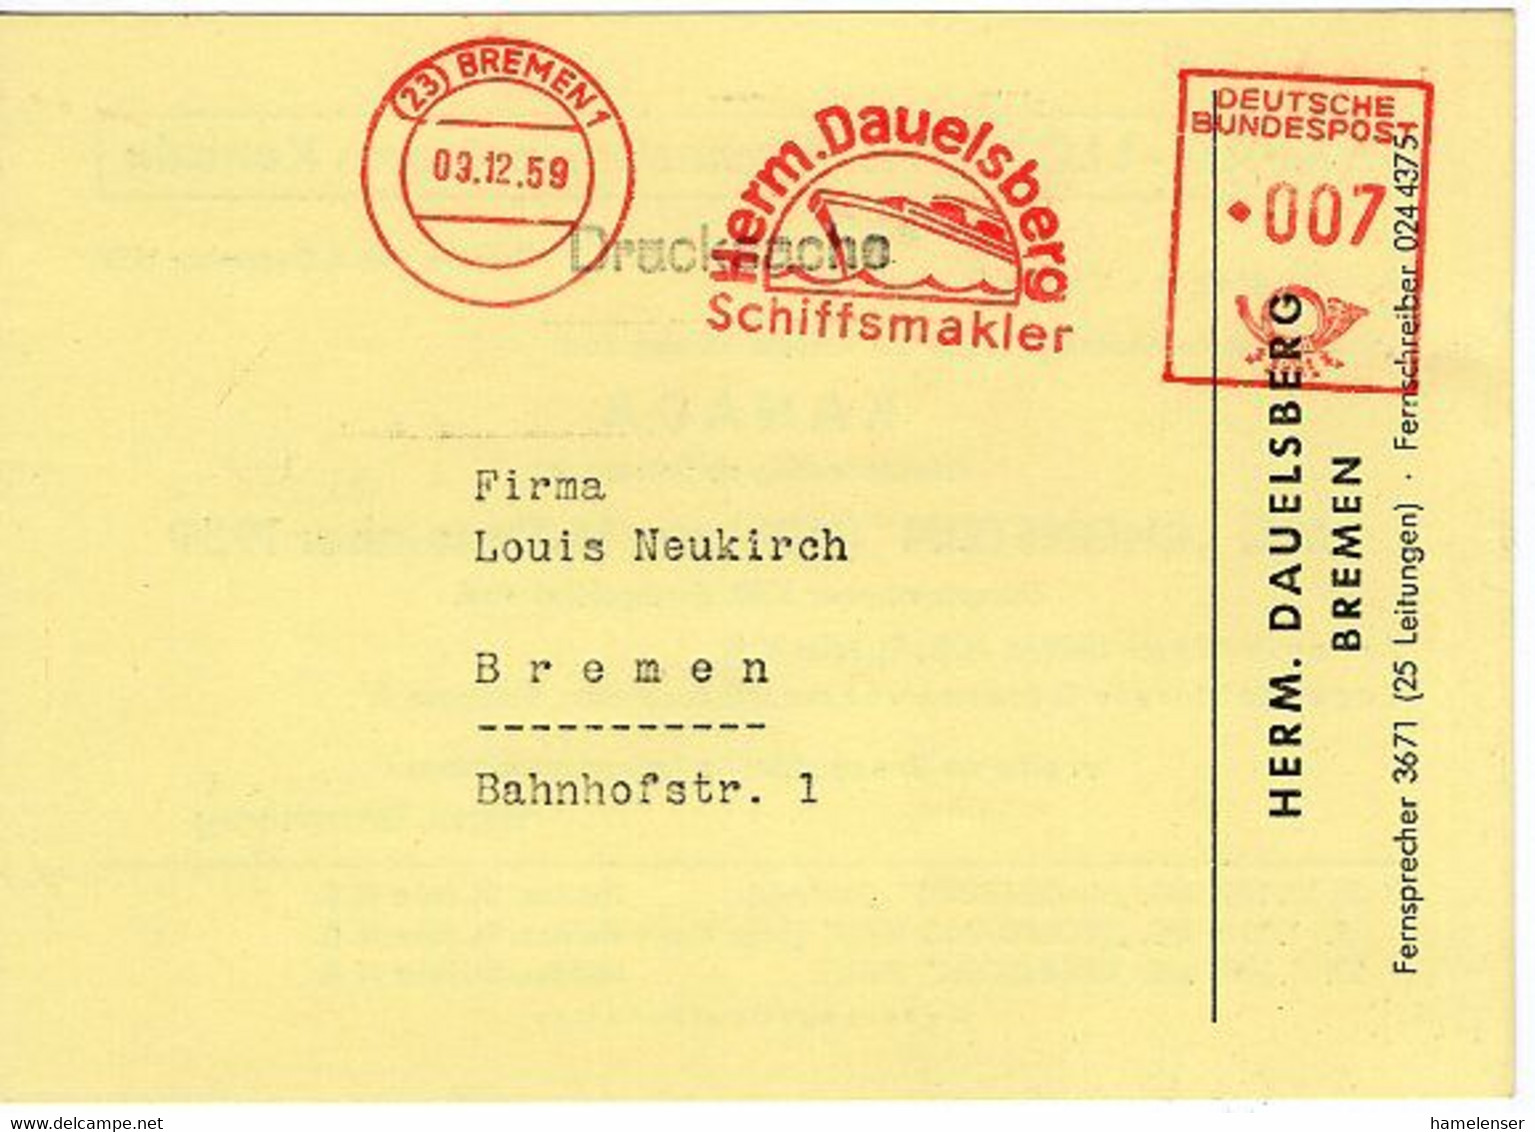 50638 - Bund - 1959 - 7Pfg. AFS A. DrucksKte. BREMEN - HERM. DAUELSBERG SCHIFFSMAKLER -> Bremen - Maritime